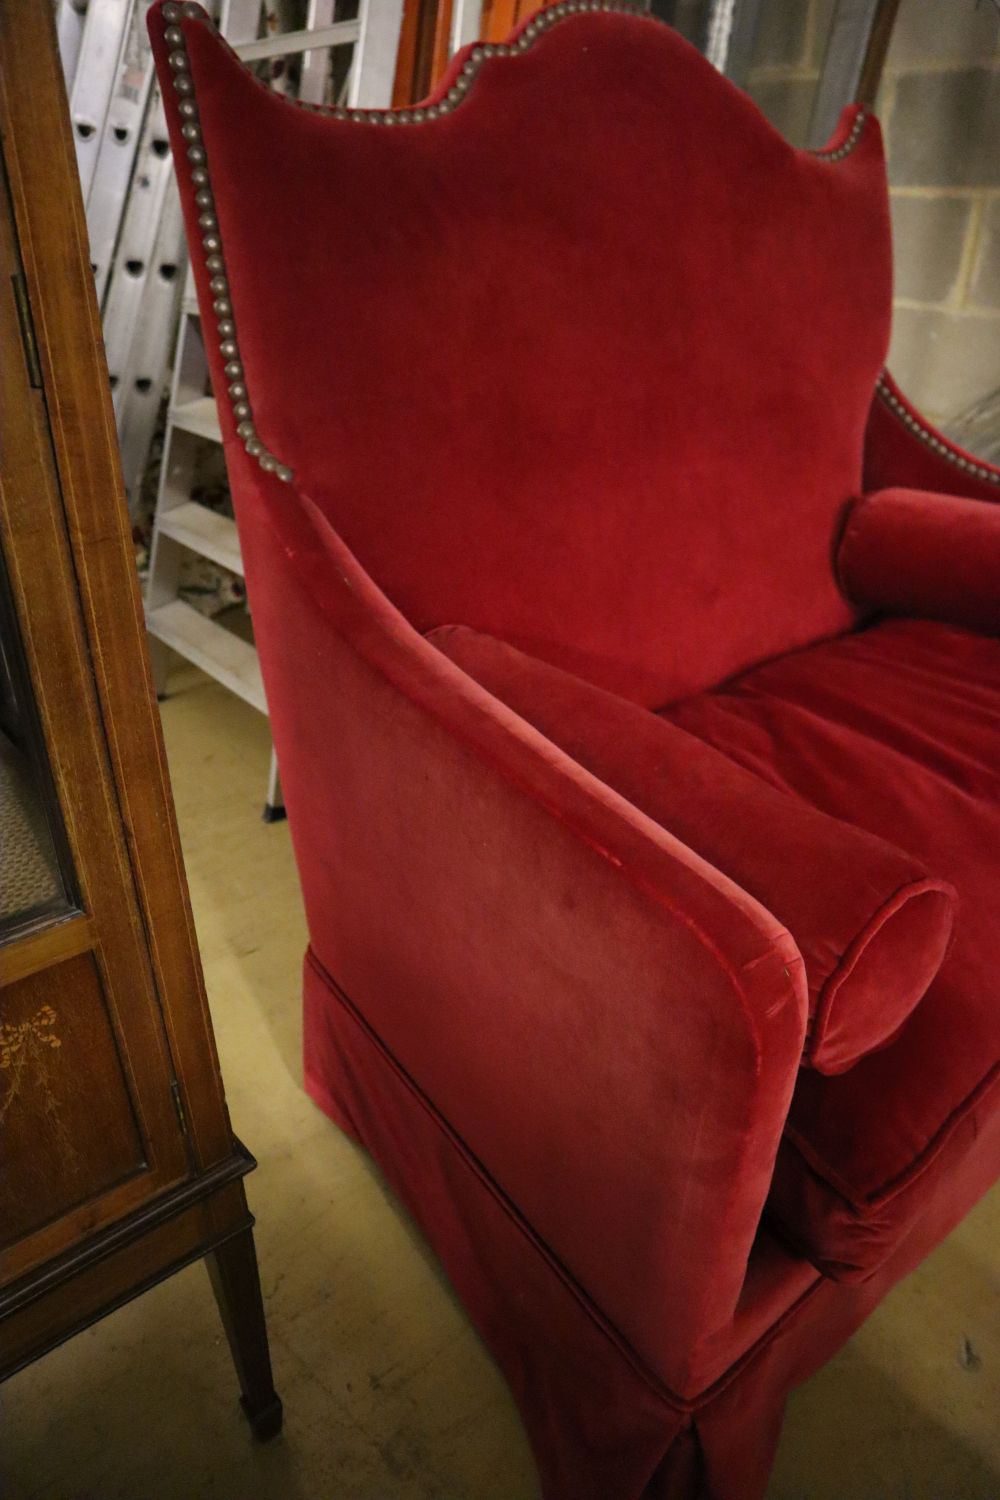 An Yves Halard two-seater sofa covered in red velvet, width 125cm depth 85cm height 132cm